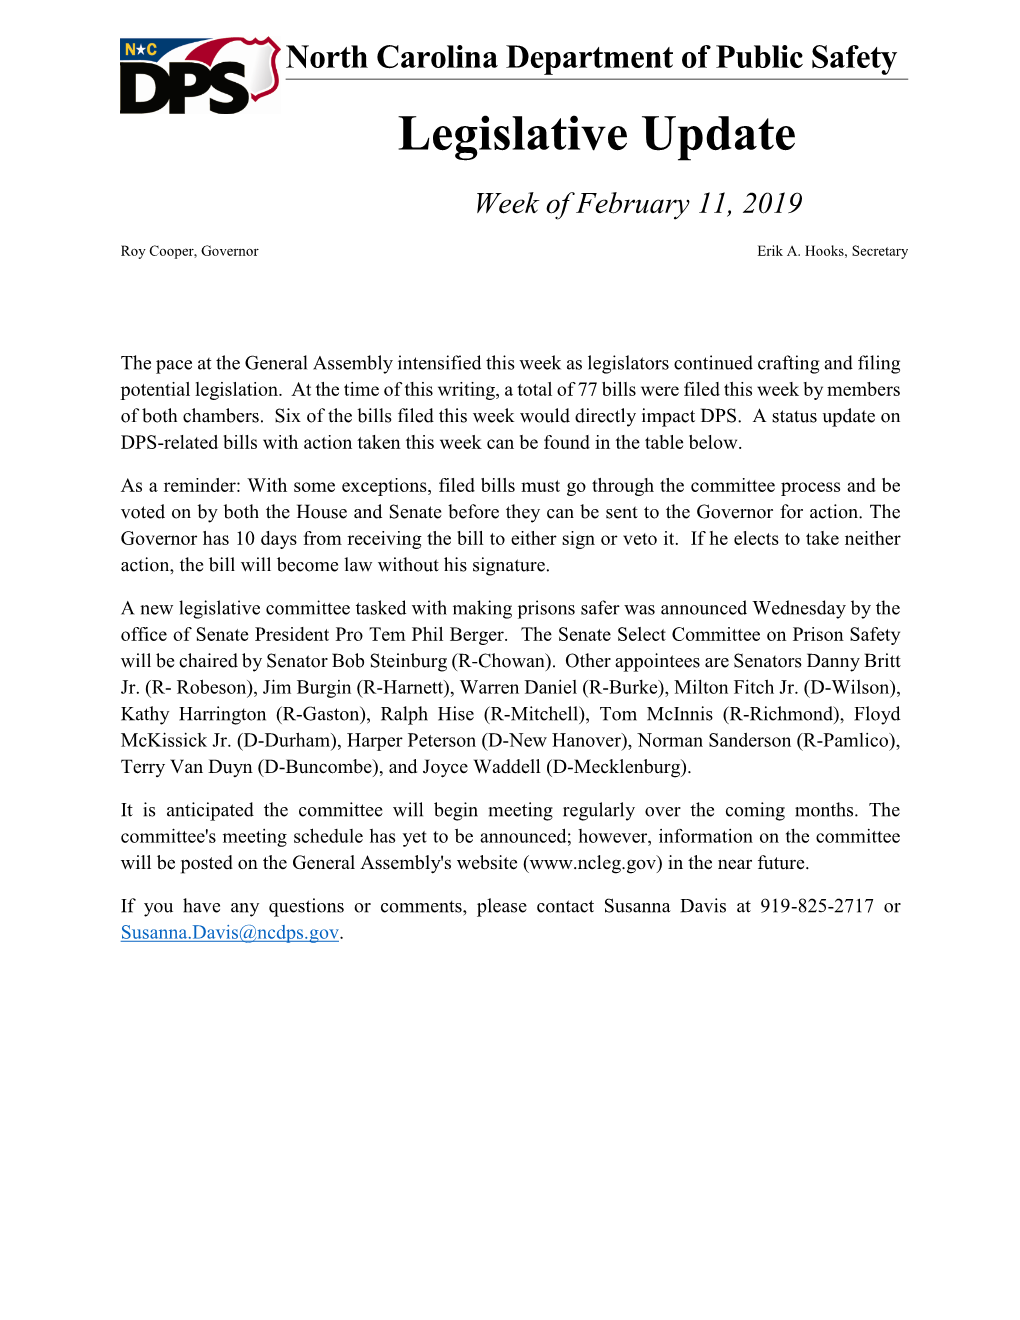 Legislative Update Week of February 11, 2019